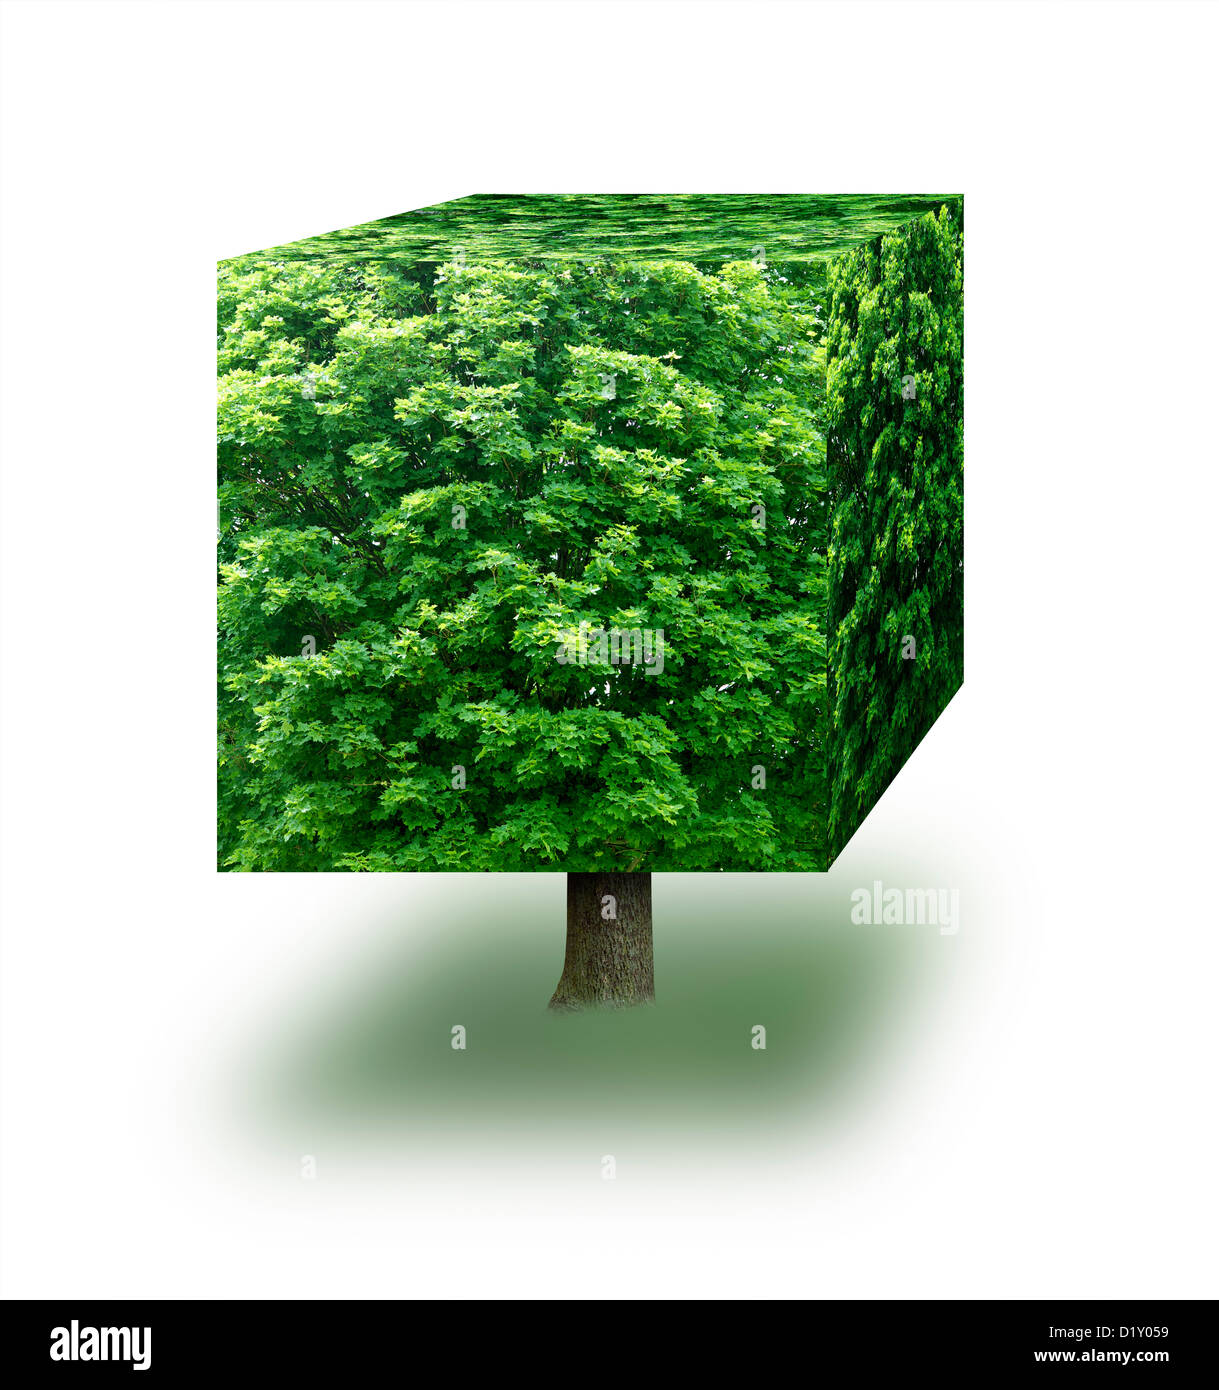 Fait à partir d'un cube tree against a white background Banque D'Images